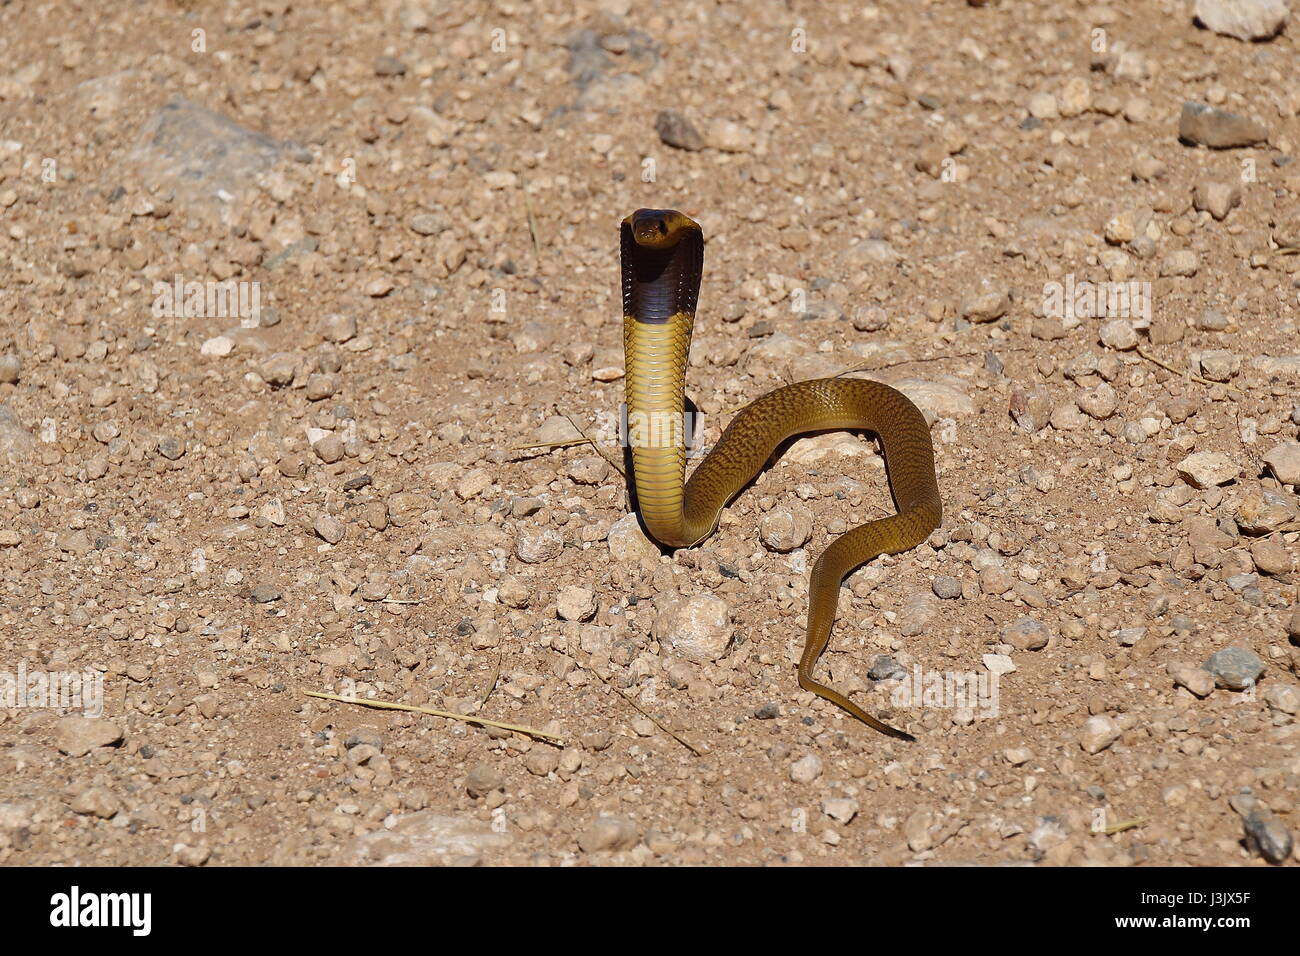 I capretti Cape cobra un serpente endemica in Sud Africa Foto Stock